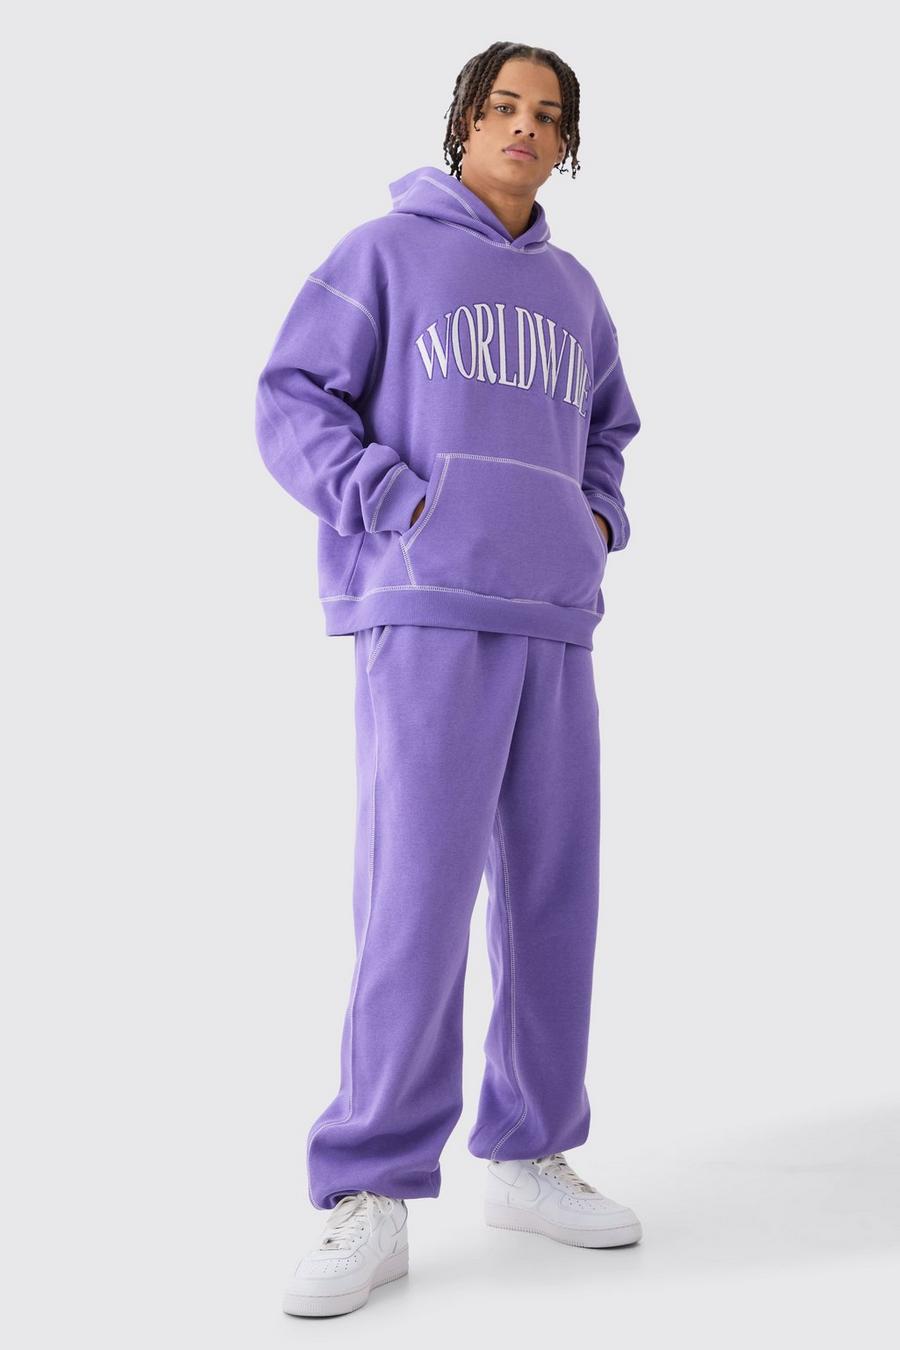 Chándal oversize recto Worldwide con costuras en contraste y capucha, Purple